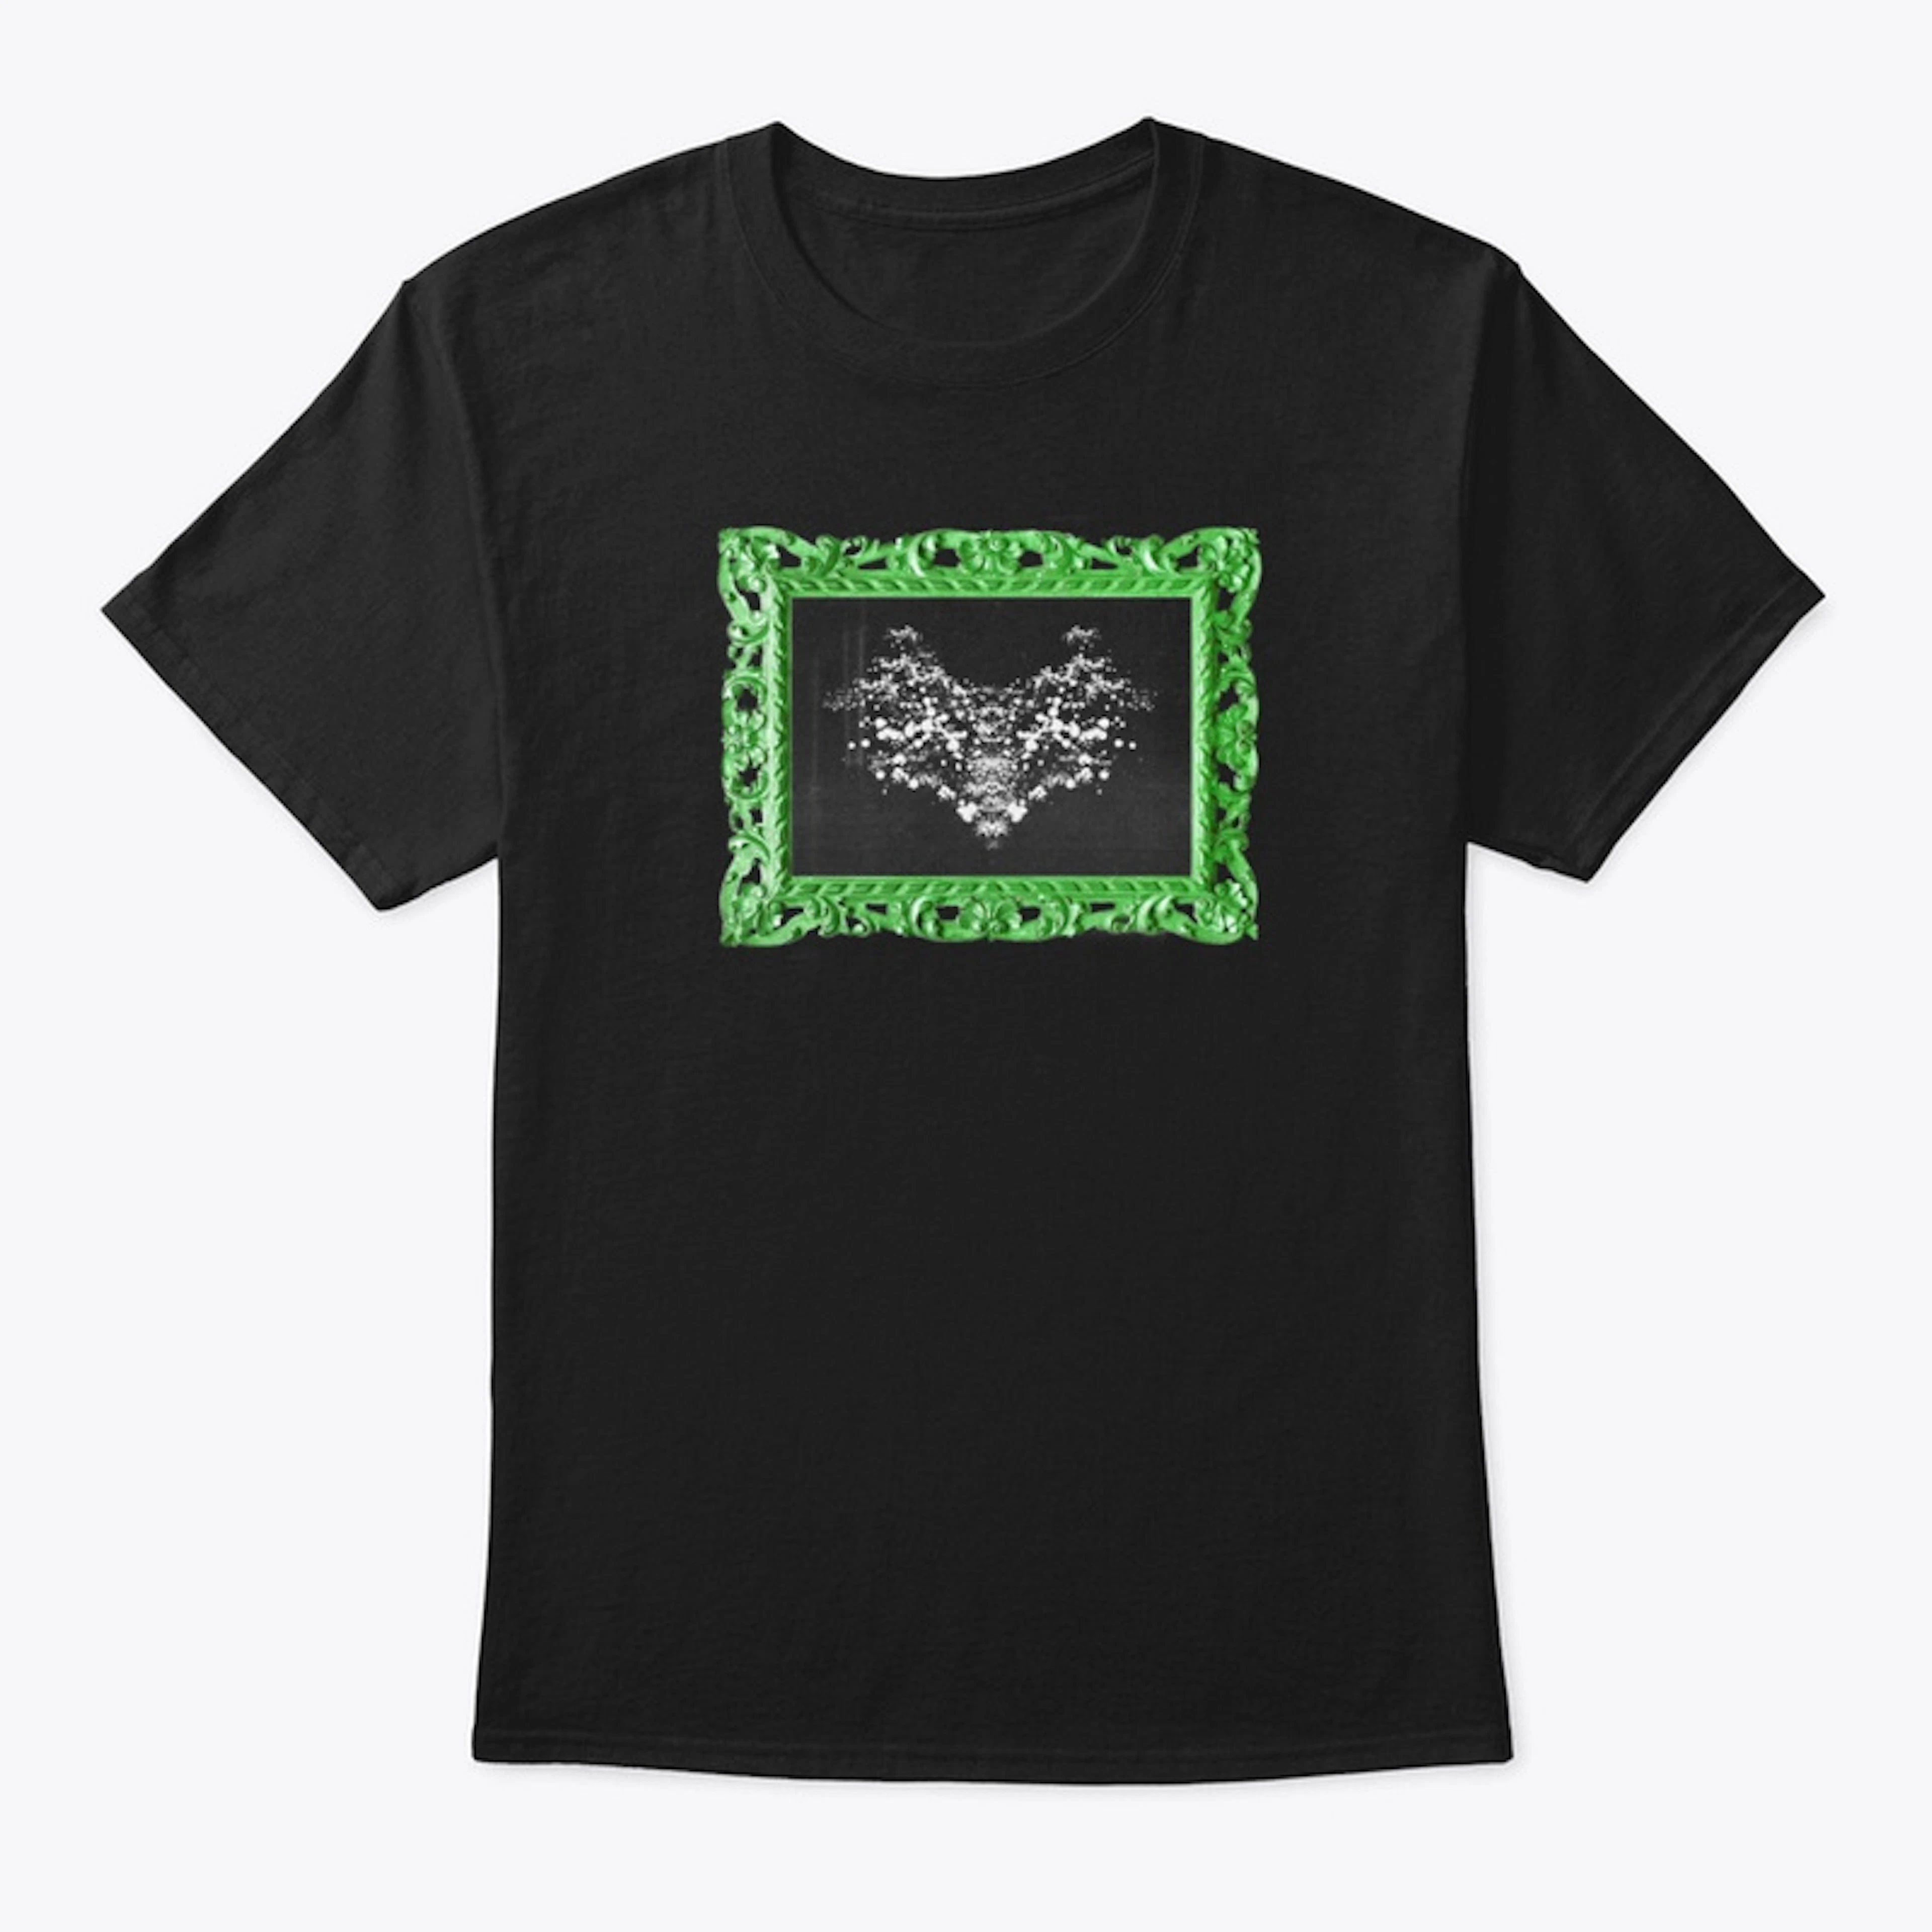 Rorschach Test T-shirt